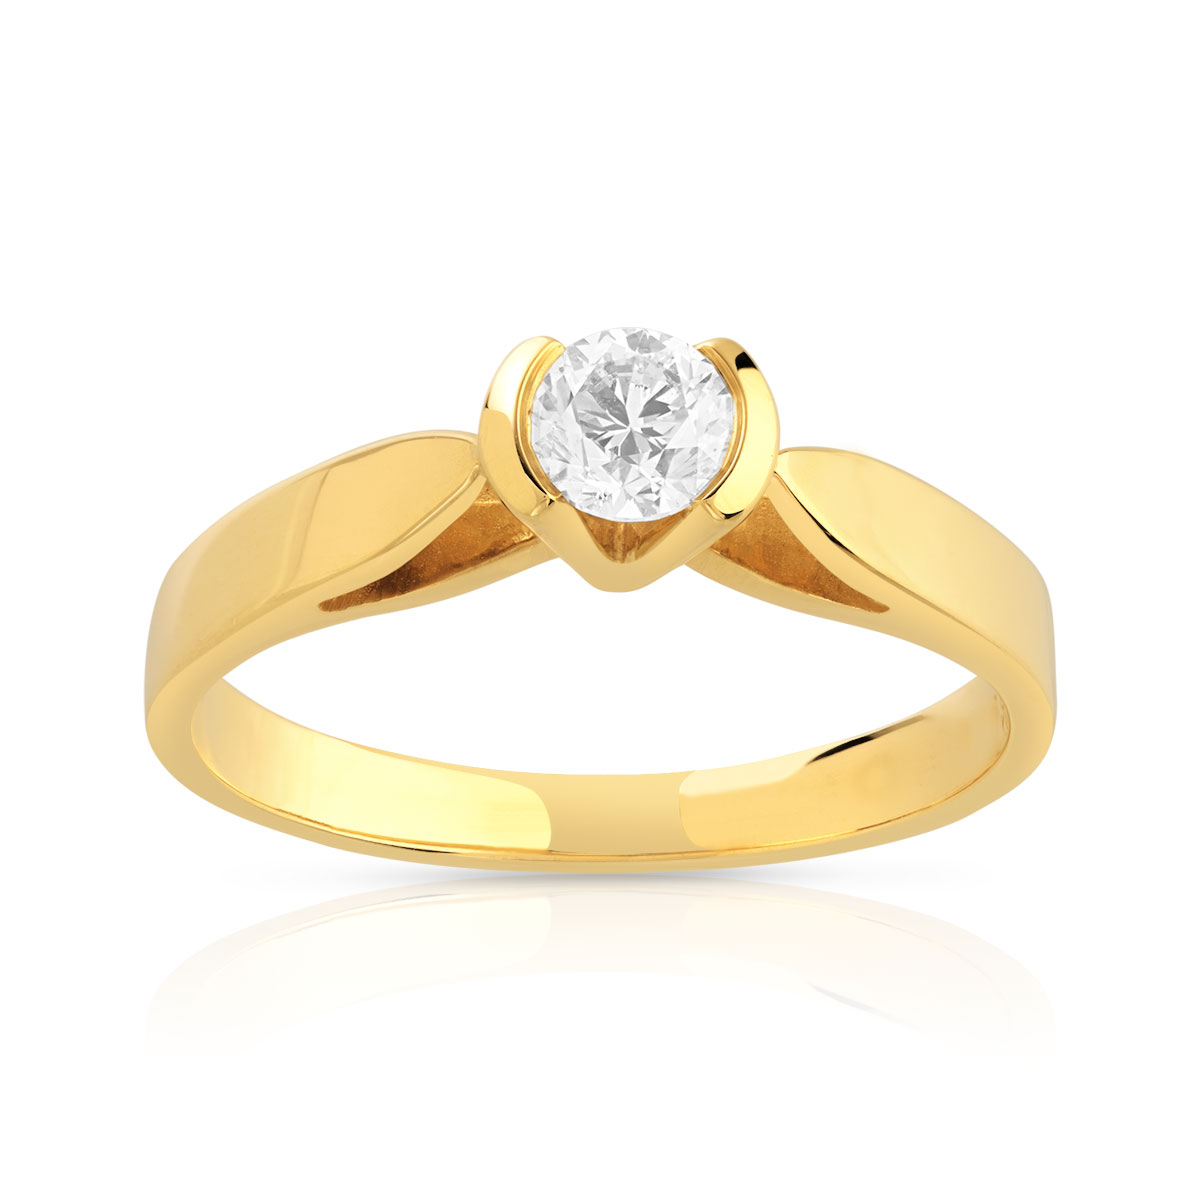 Bague solitaire or 750 jaune diamant synthétique 0.30 carat